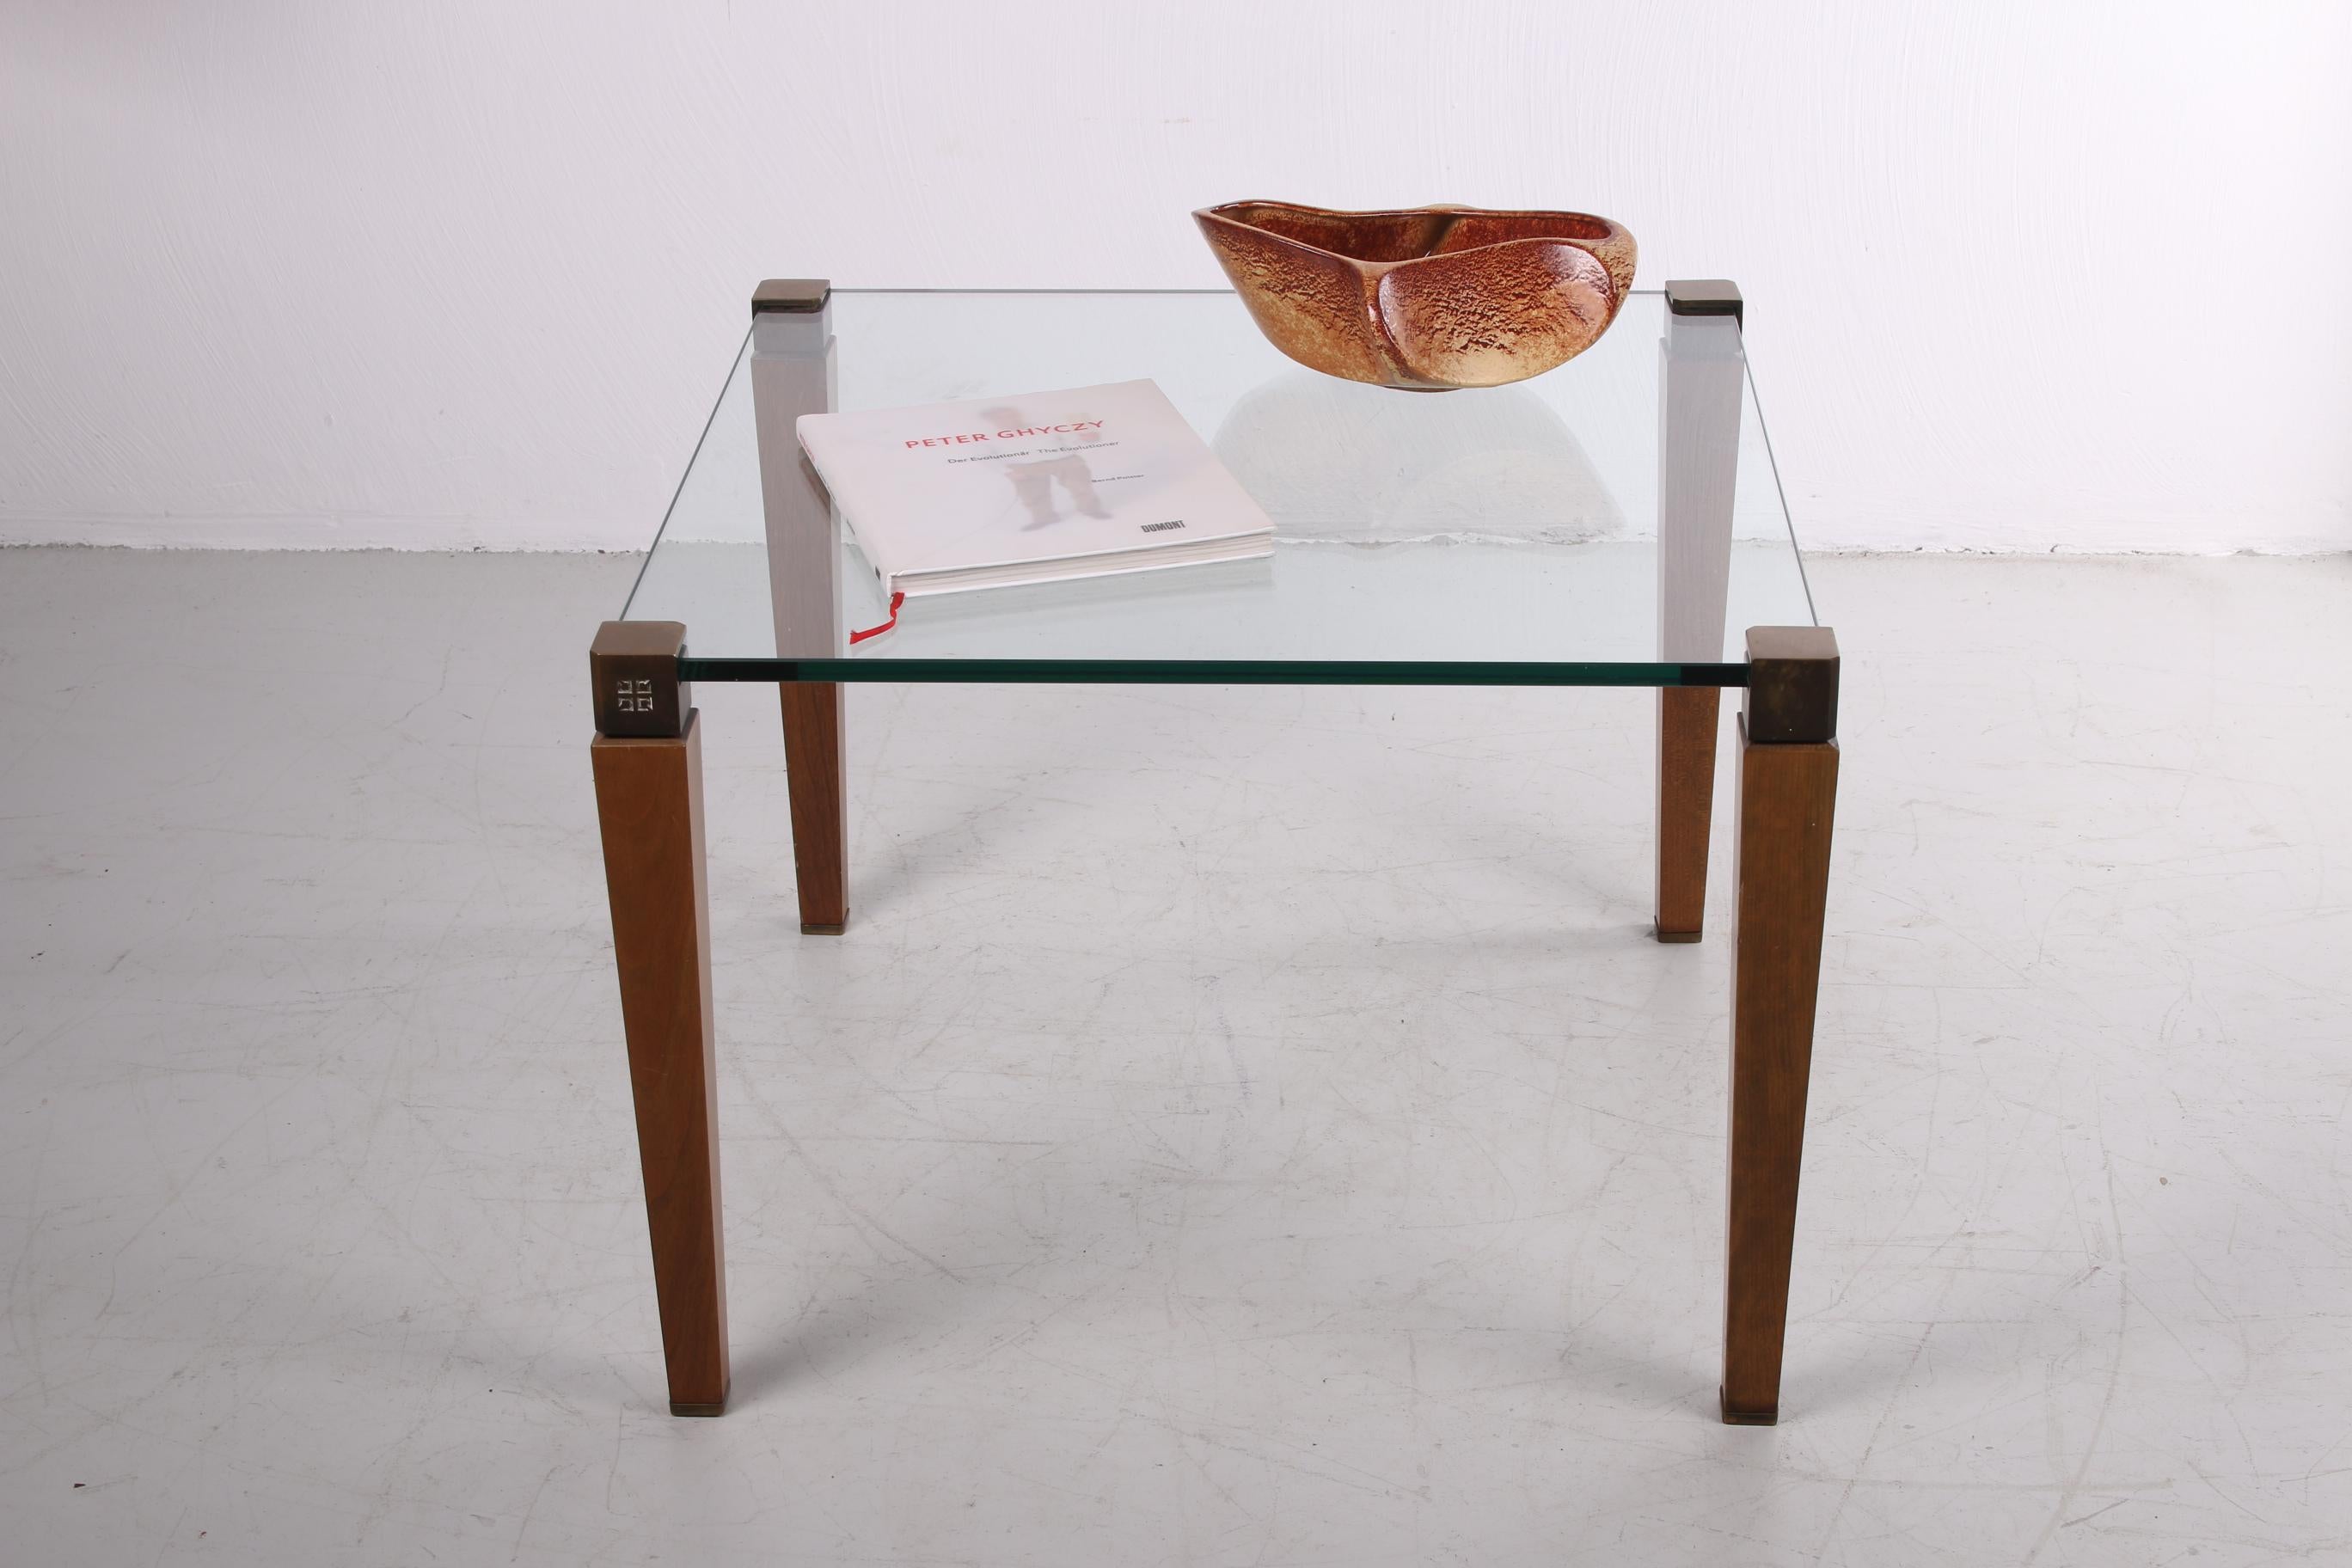 Une belle table basse du designer hongrois Peter Ghyzcy. Cette version a été produite dans les années 1970 aux Pays-Bas.

Cette table basse T56/2 a un plateau en verre transparent et repose sur des pieds en bois avec une tête en bronze